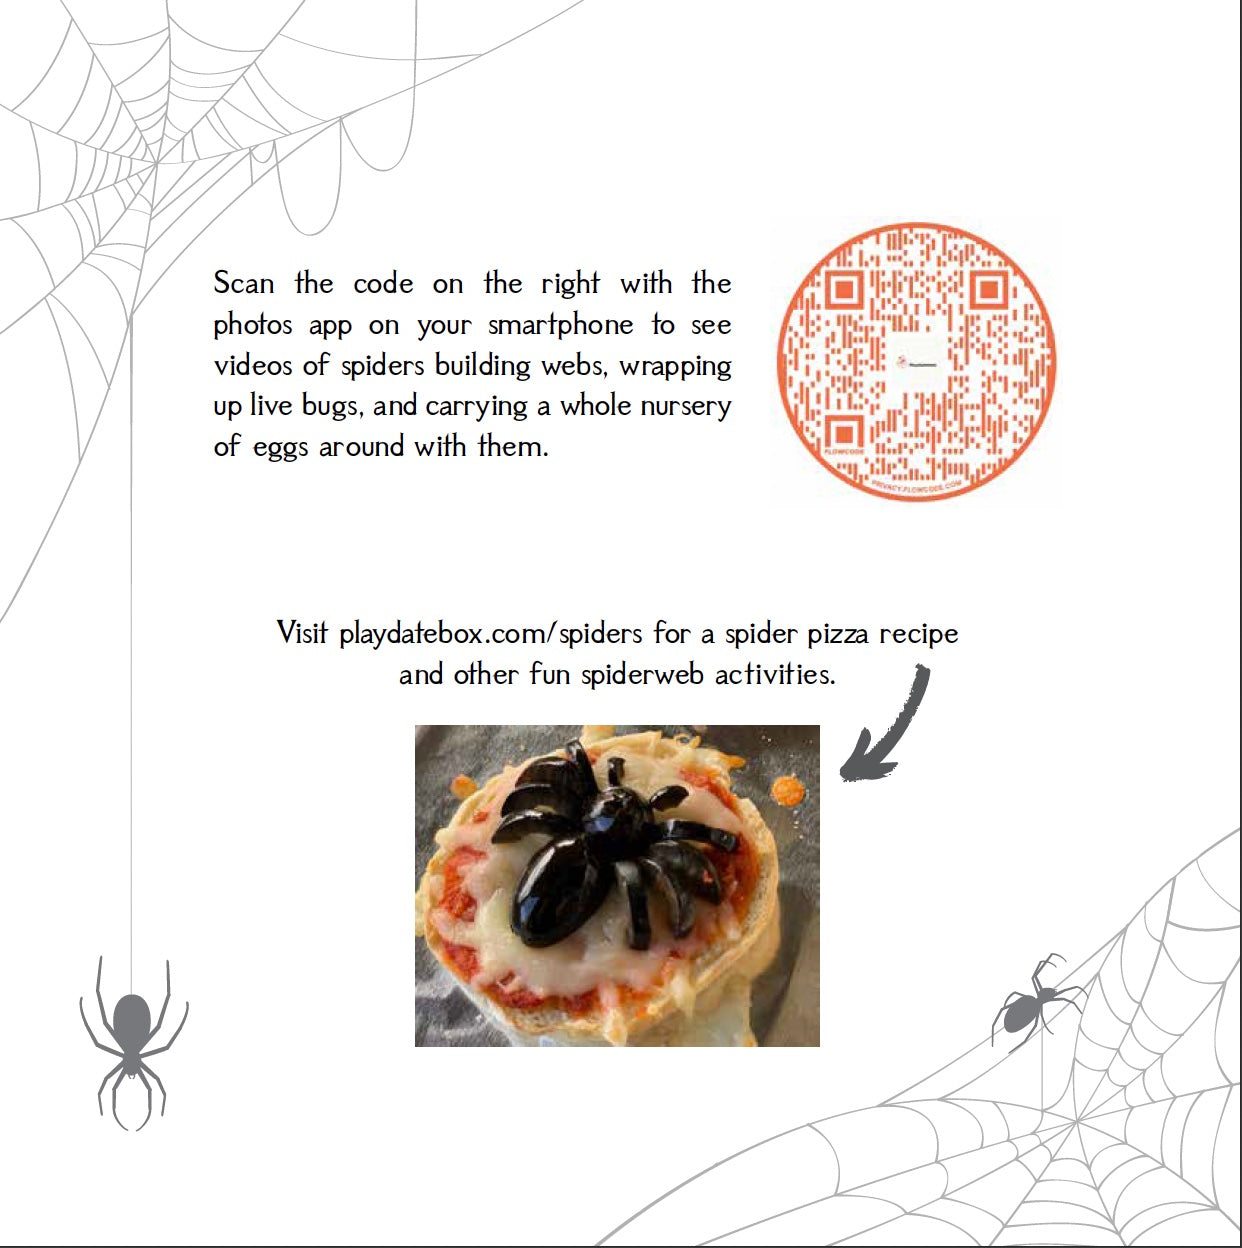 Spiderwebs & Spider Silk - Make Momentos